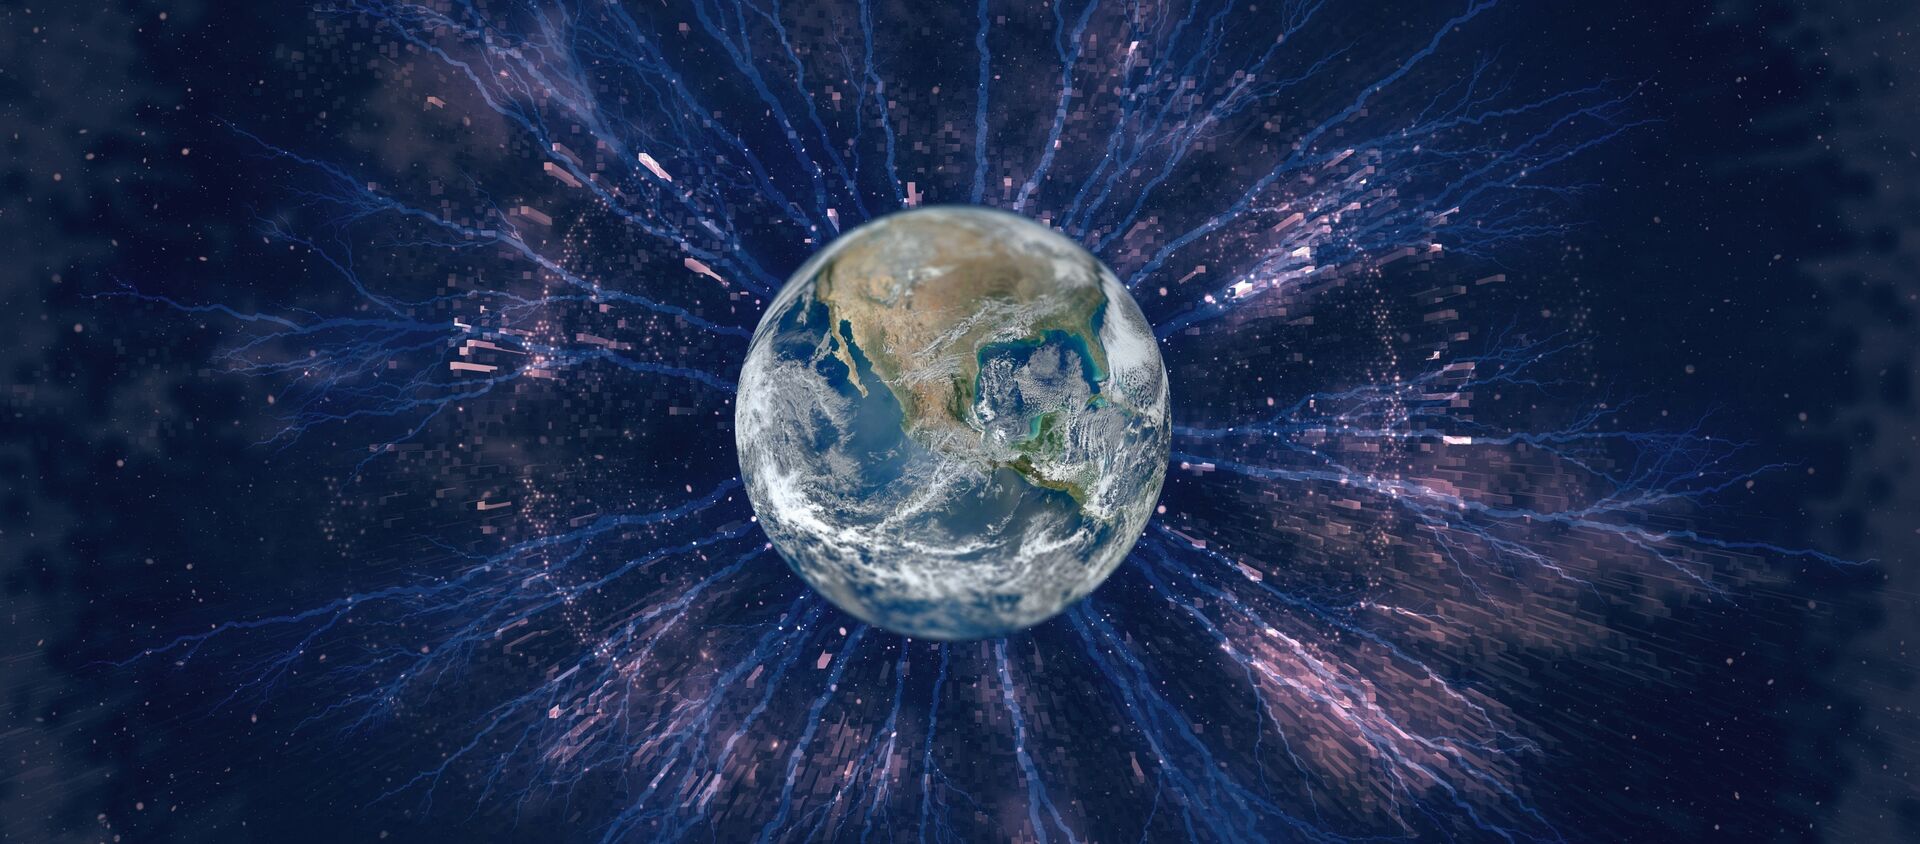 صورة تعبيرية للكرة الأرضية مع الأشعة الكونية حولها  - سبوتنيك عربي, 1920, 31.08.2021